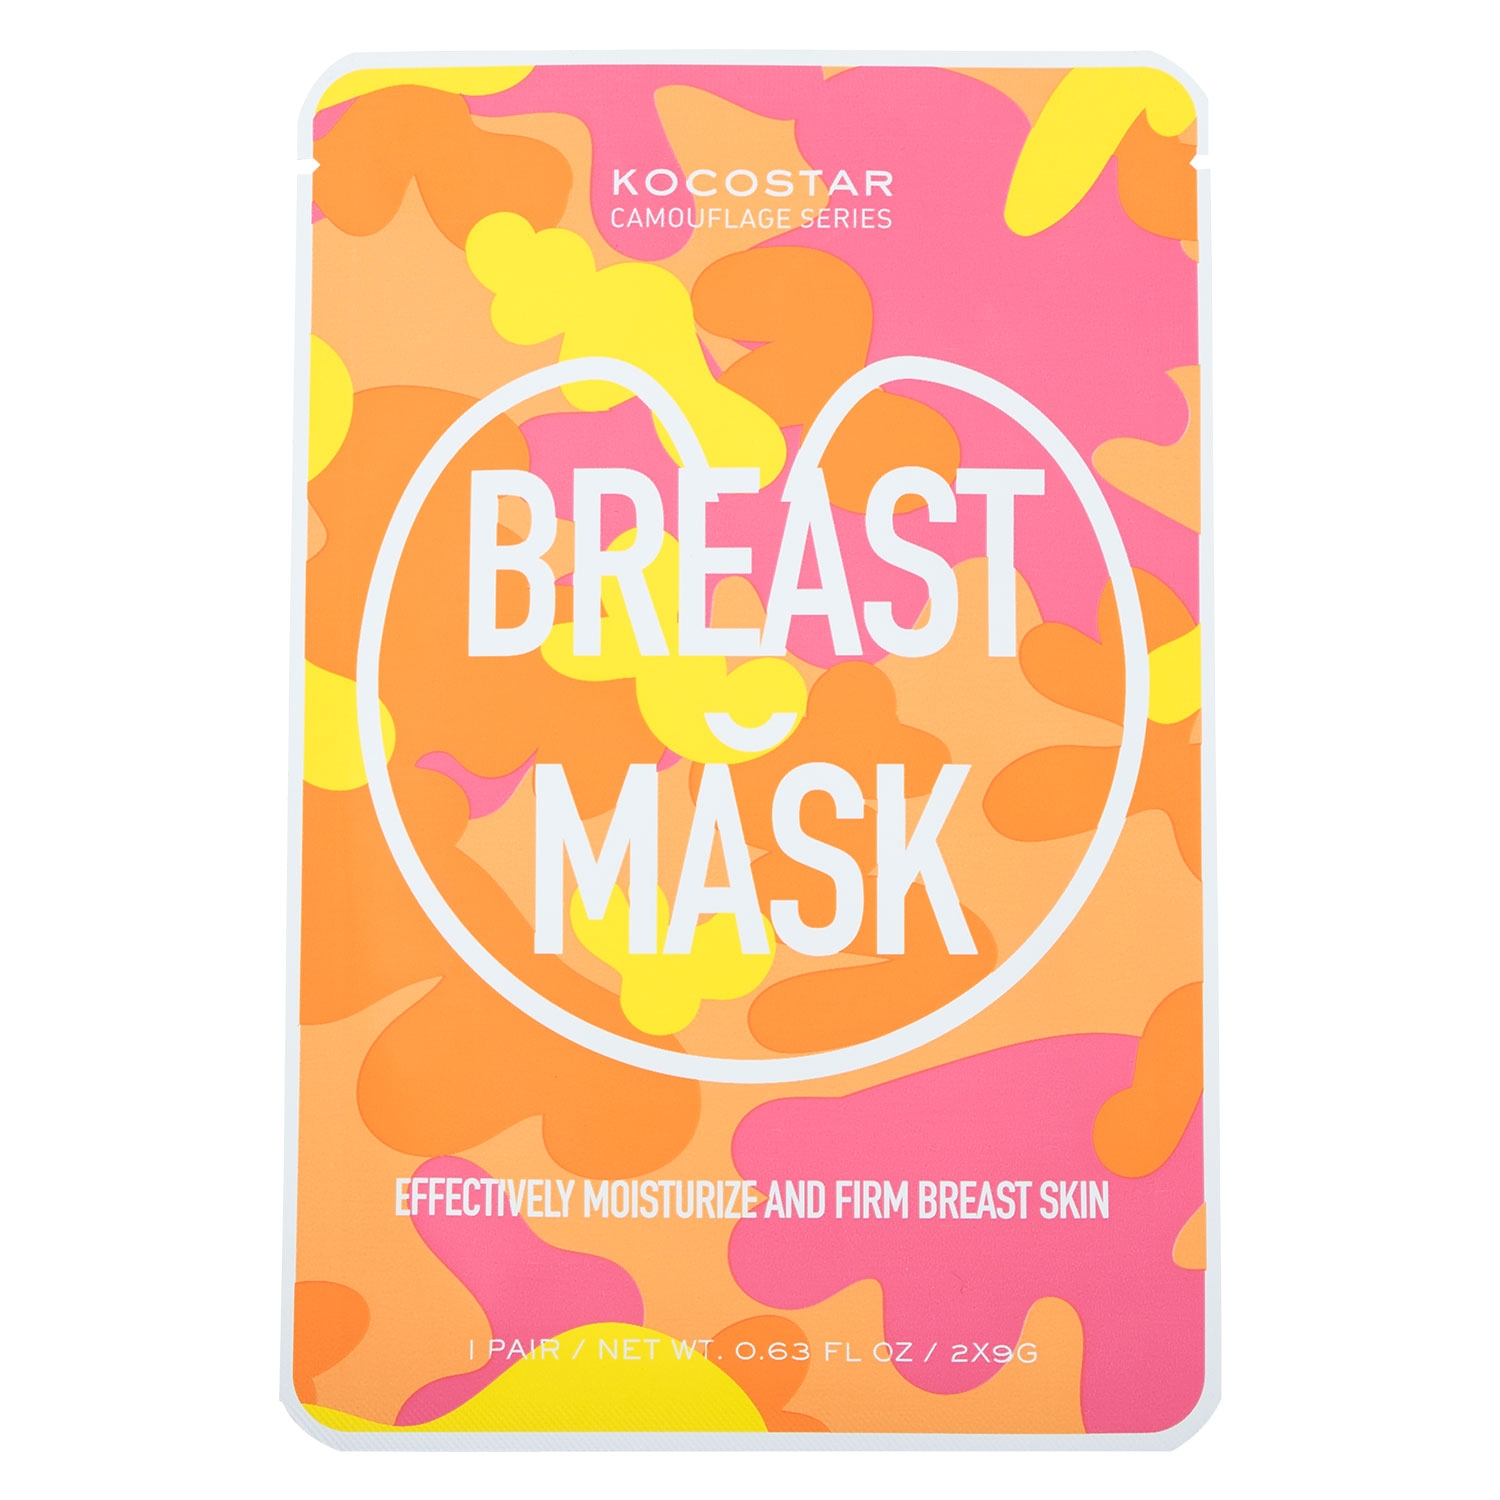 Produktbild von Kocostar - Breast Mask